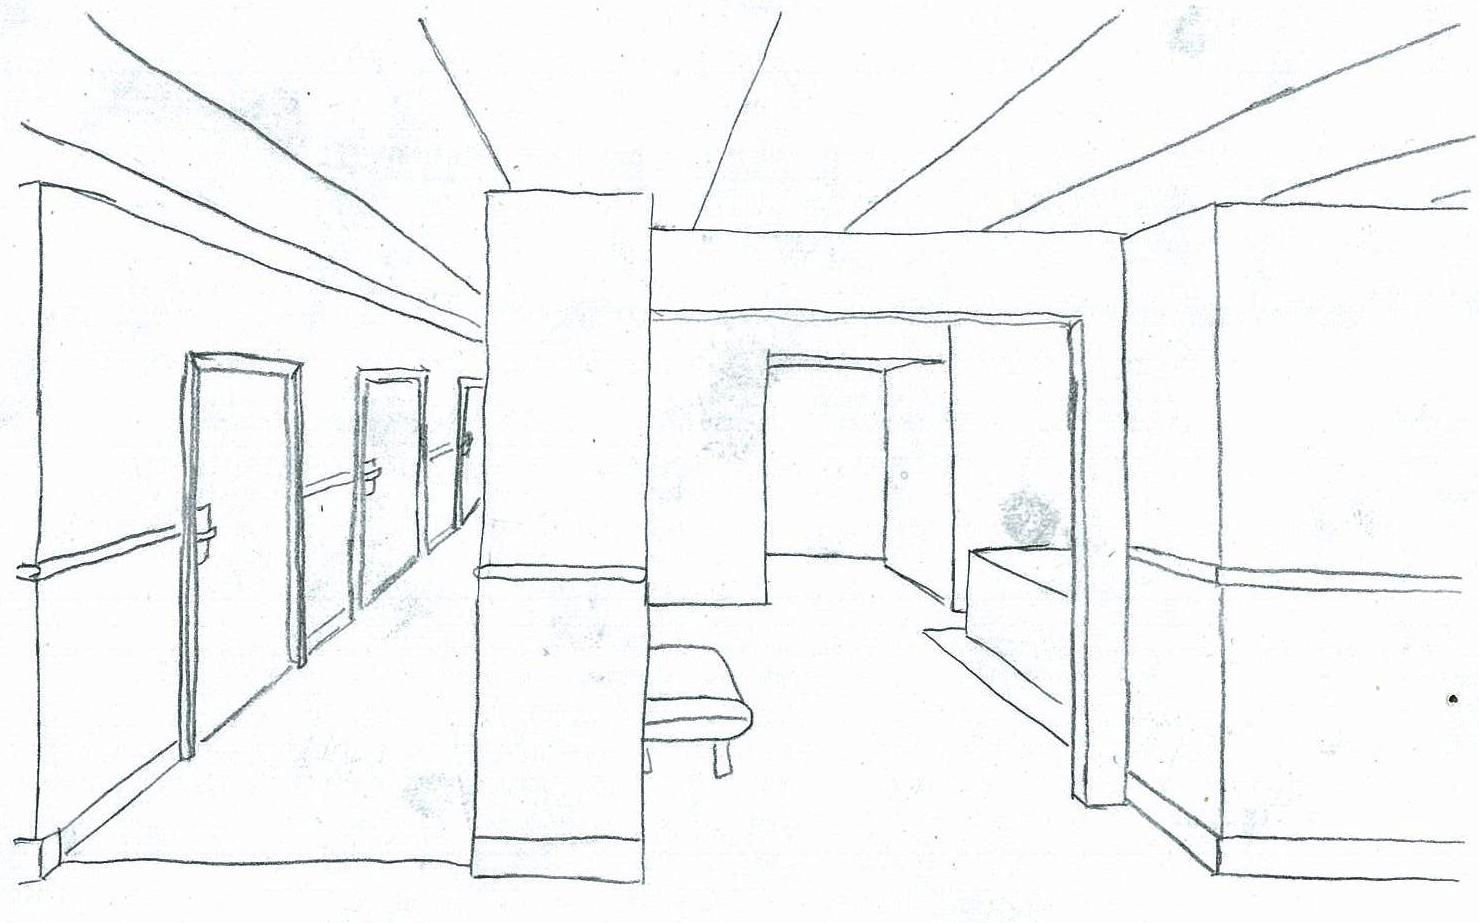 Интерьер комнаты рисунок карандашом. Угловая перспектива комнаты. Угловая перспектива комнаты рисунок. Угловая перспектива здания. Ремонт комнаты поэтапно